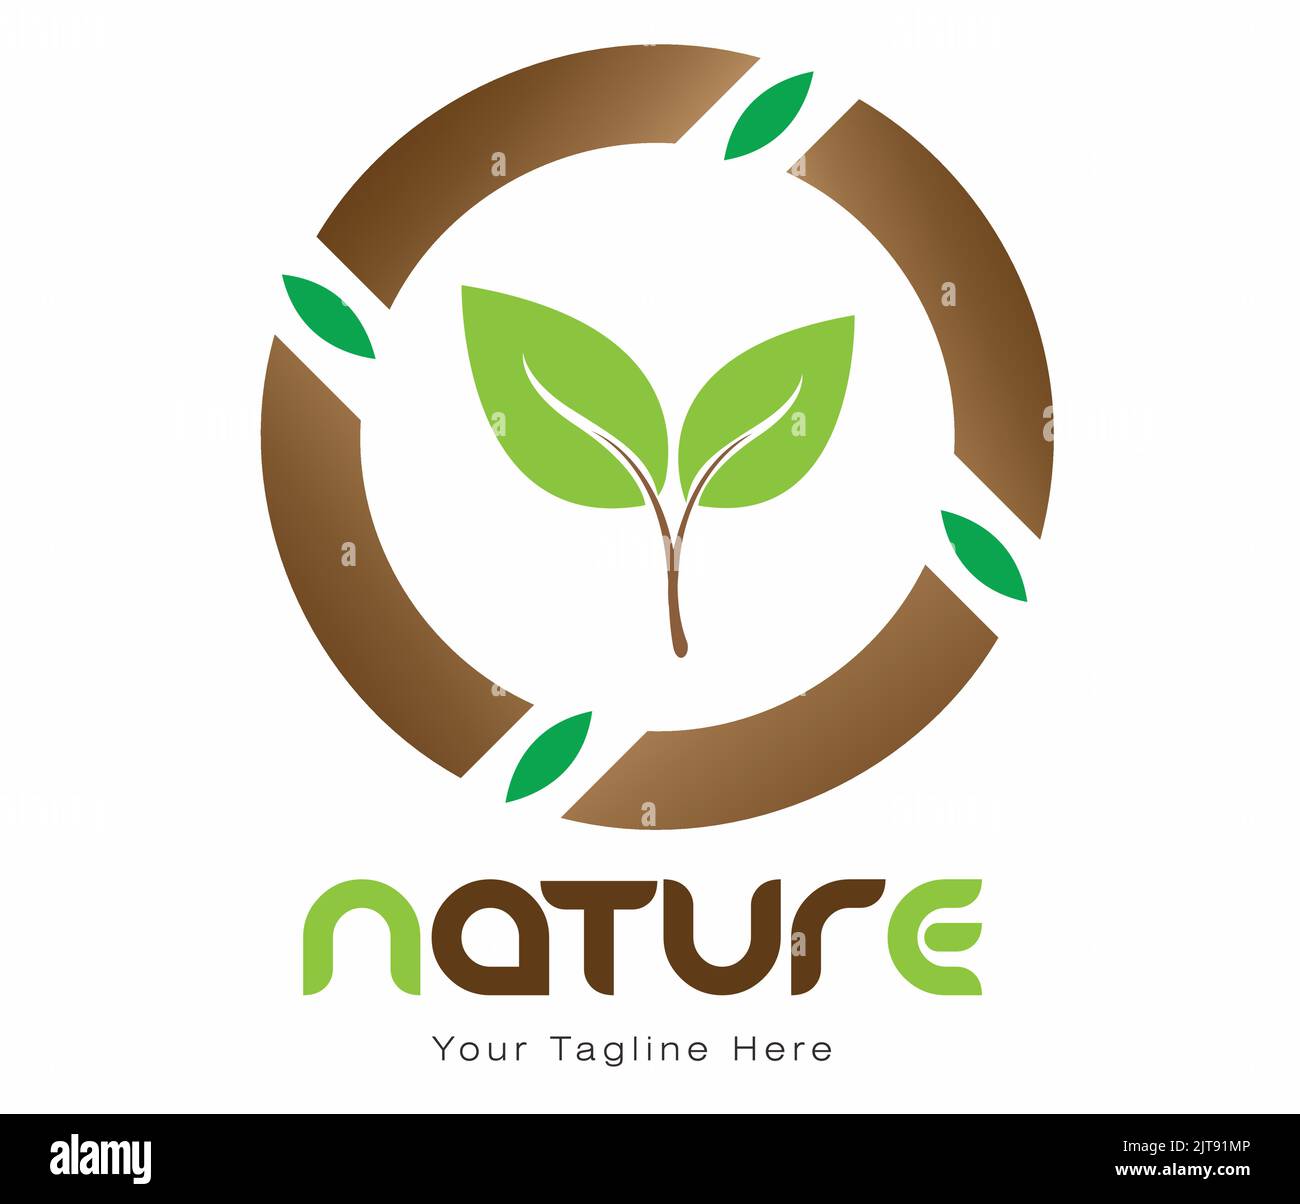 Natur-Logo Landwirtschaft Bio-Lebensmittel-Logo grün mit Blattanbau Bauernhof-Logo-Vektor Illustration von gesunden natürlichen grünen Gemüse-Logo templ Stock Vektor